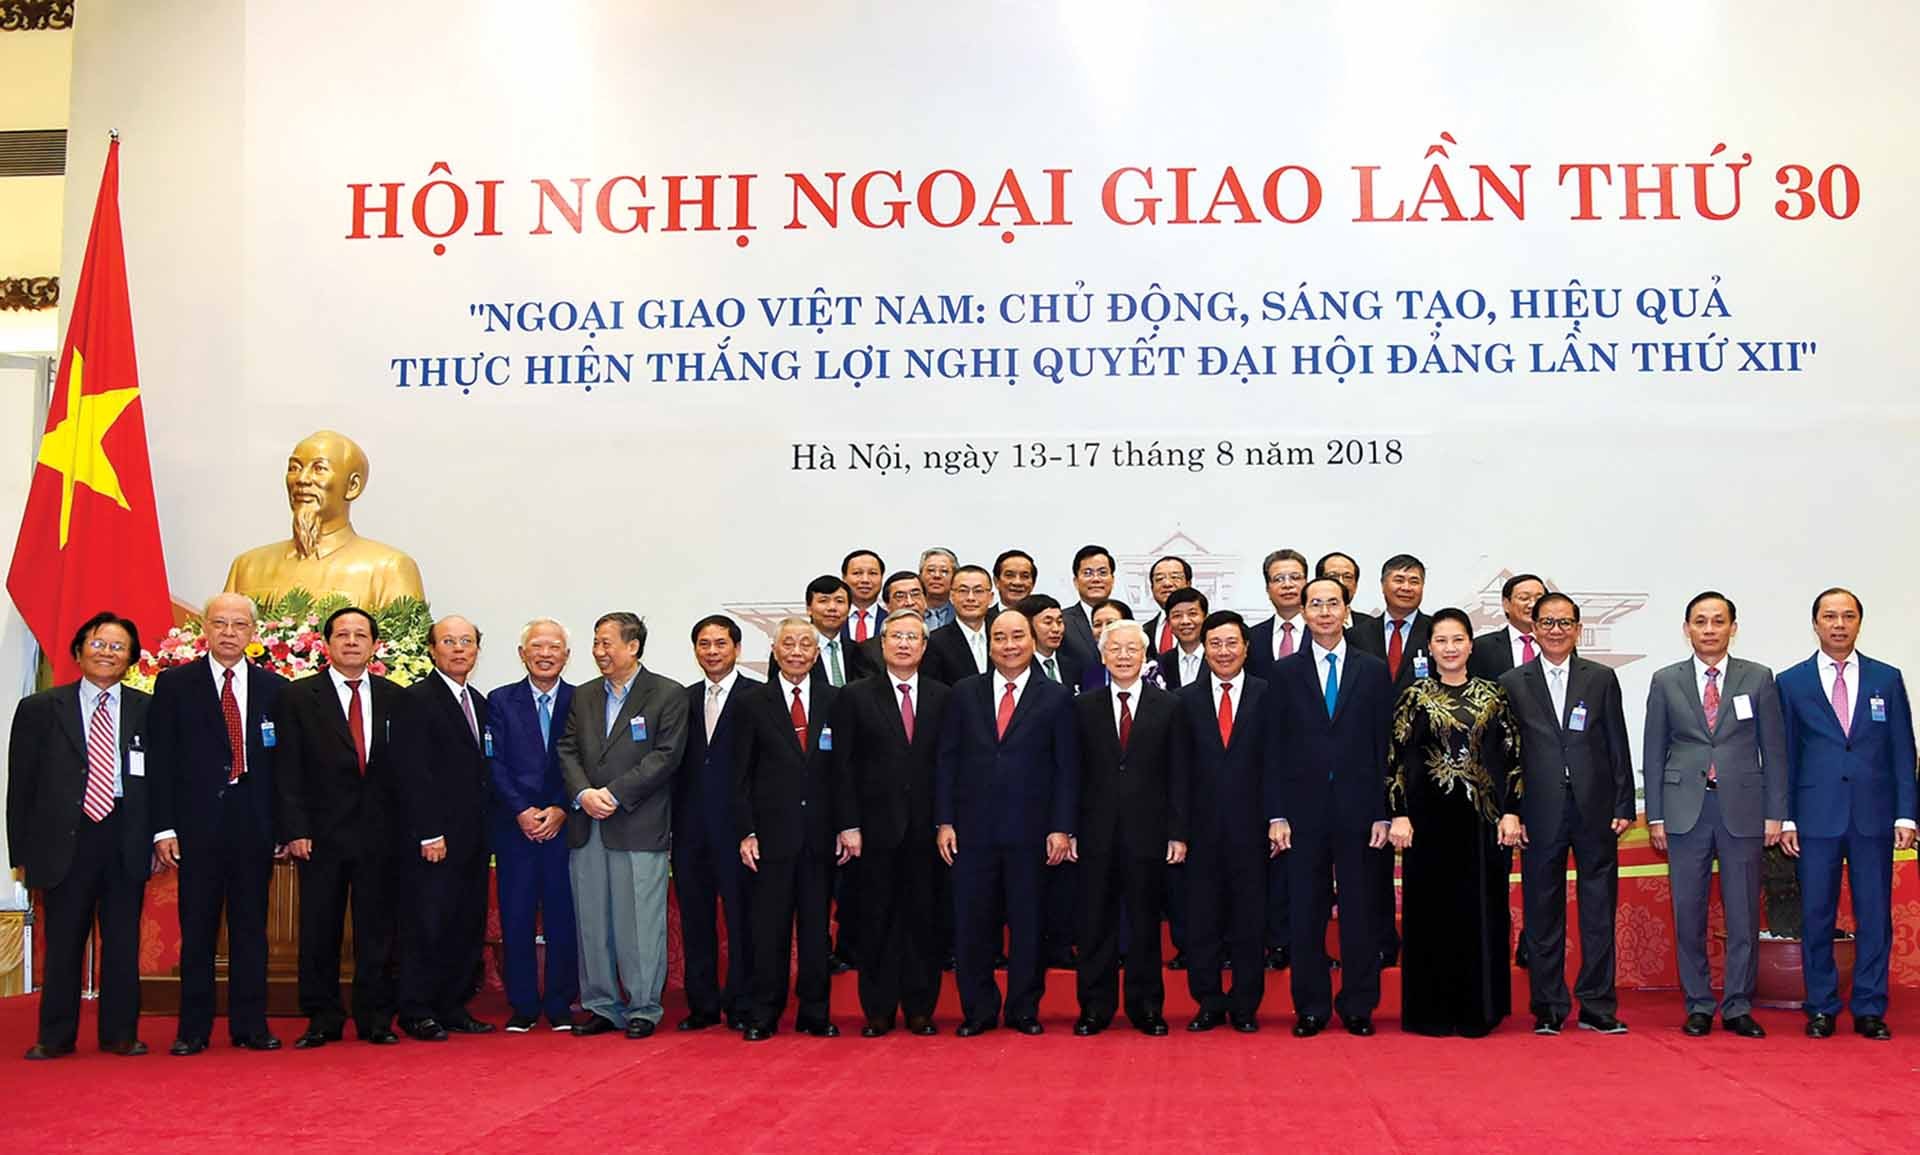 Tổng Bí thư Nguyễn Phú Trọng và các đại biểu dự Hội nghị Ngoại giao lần thứ 30. (Ảnh: Tuấn Anh)